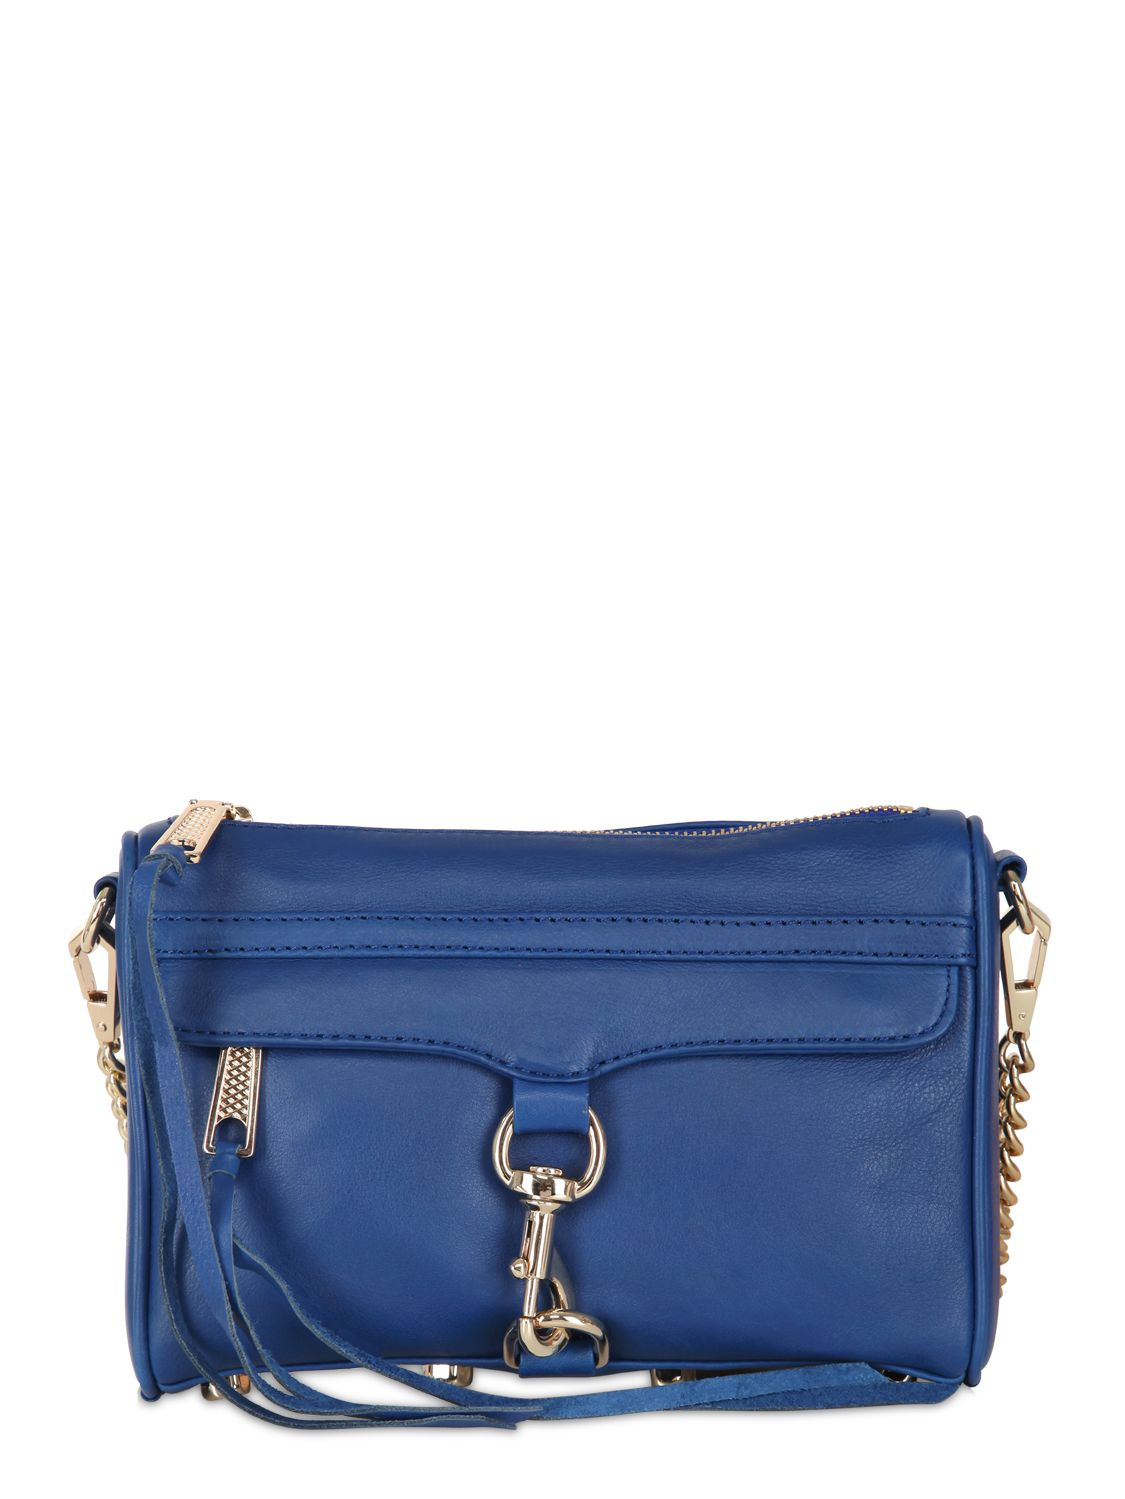 Lyst - Rebecca Minkoff Mini Mac Matte Leather Shoulder Bag in Blue